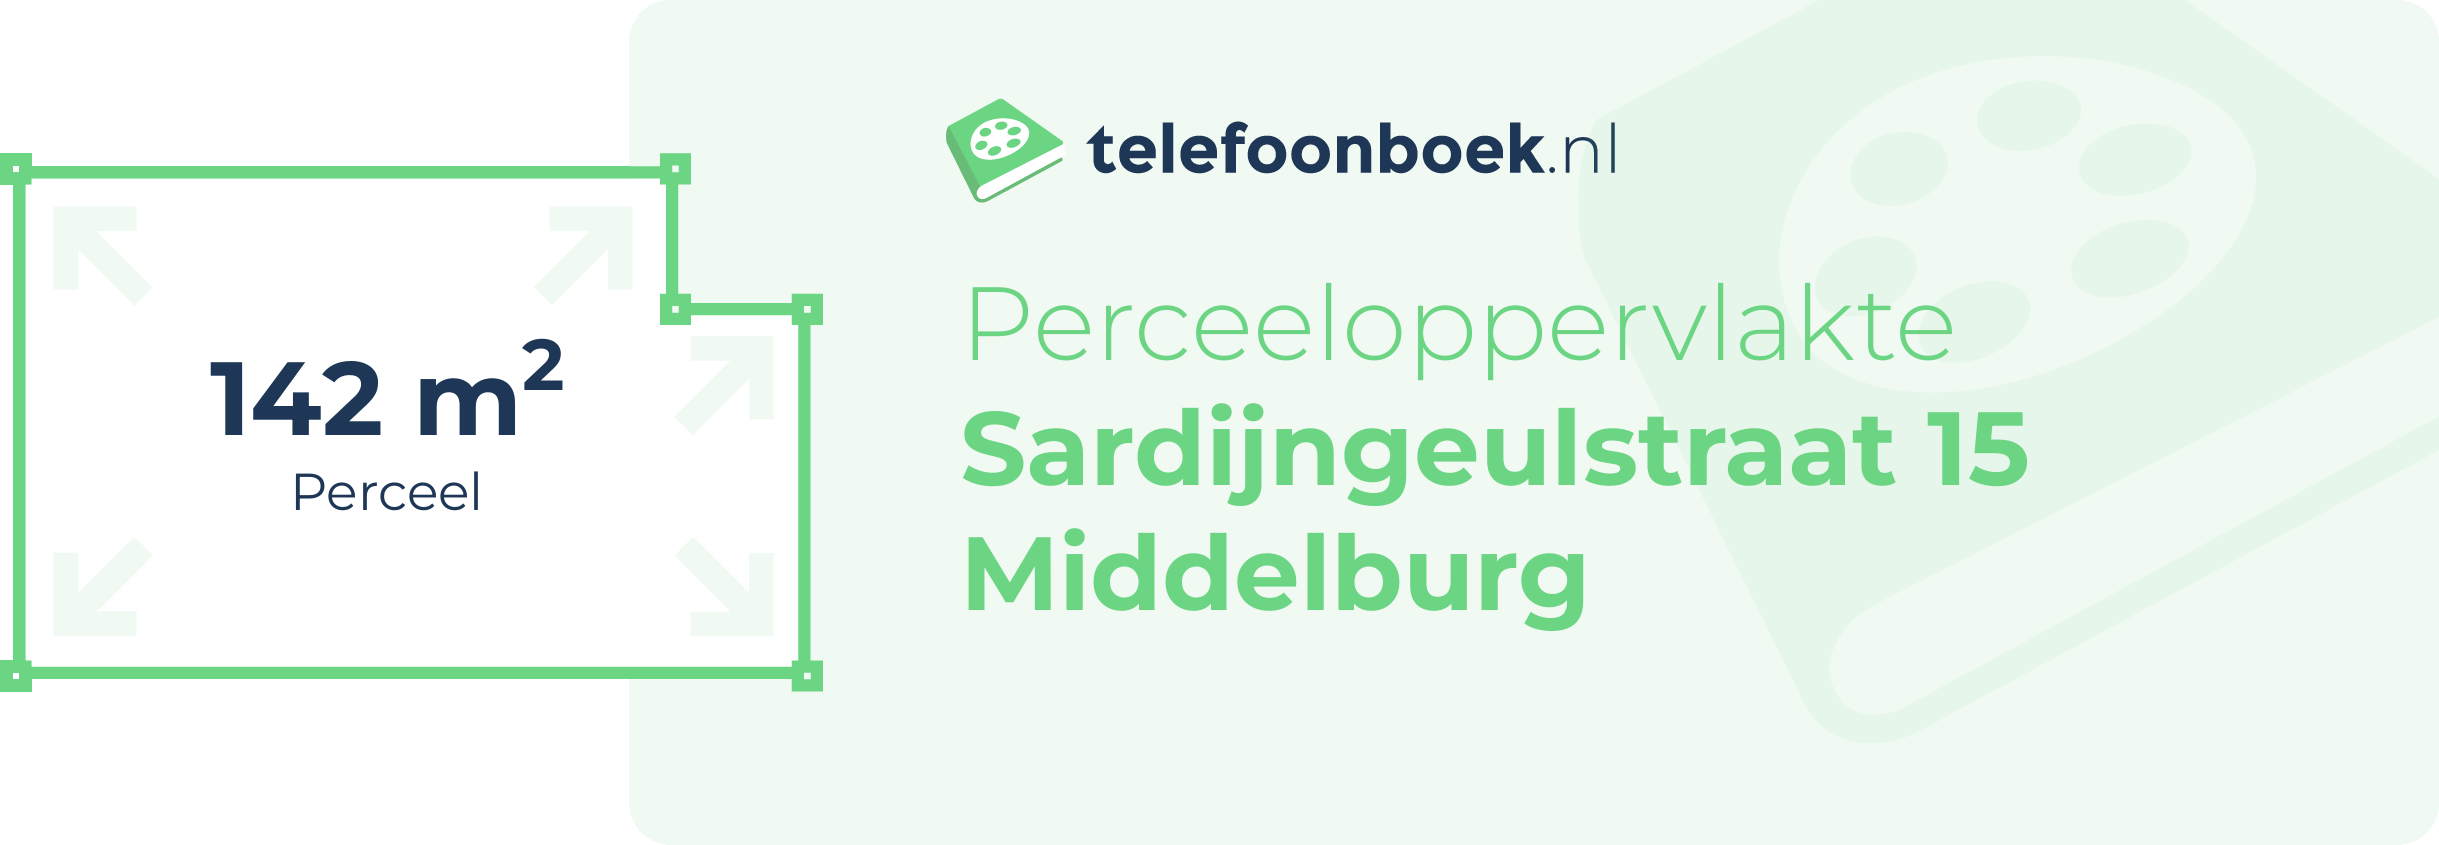 Perceeloppervlakte Sardijngeulstraat 15 Middelburg